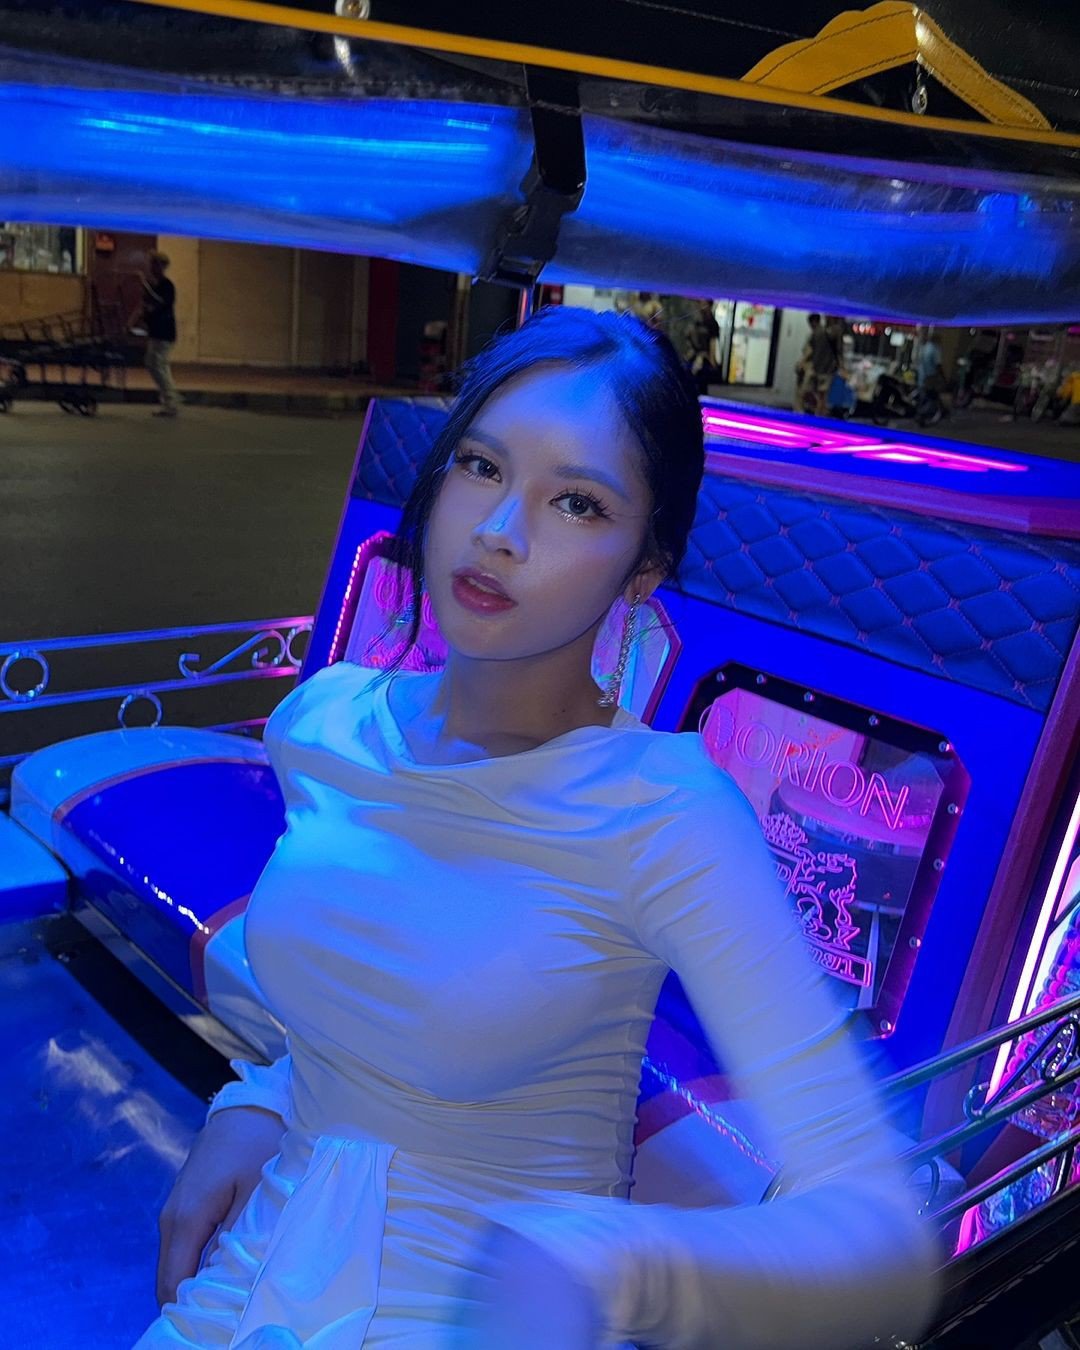 3 mỹ nhân chuyển giới trong MV ROCKSTAR - Lisa: Có Á hậu 1 Miss Tiffany’s Universe - 6